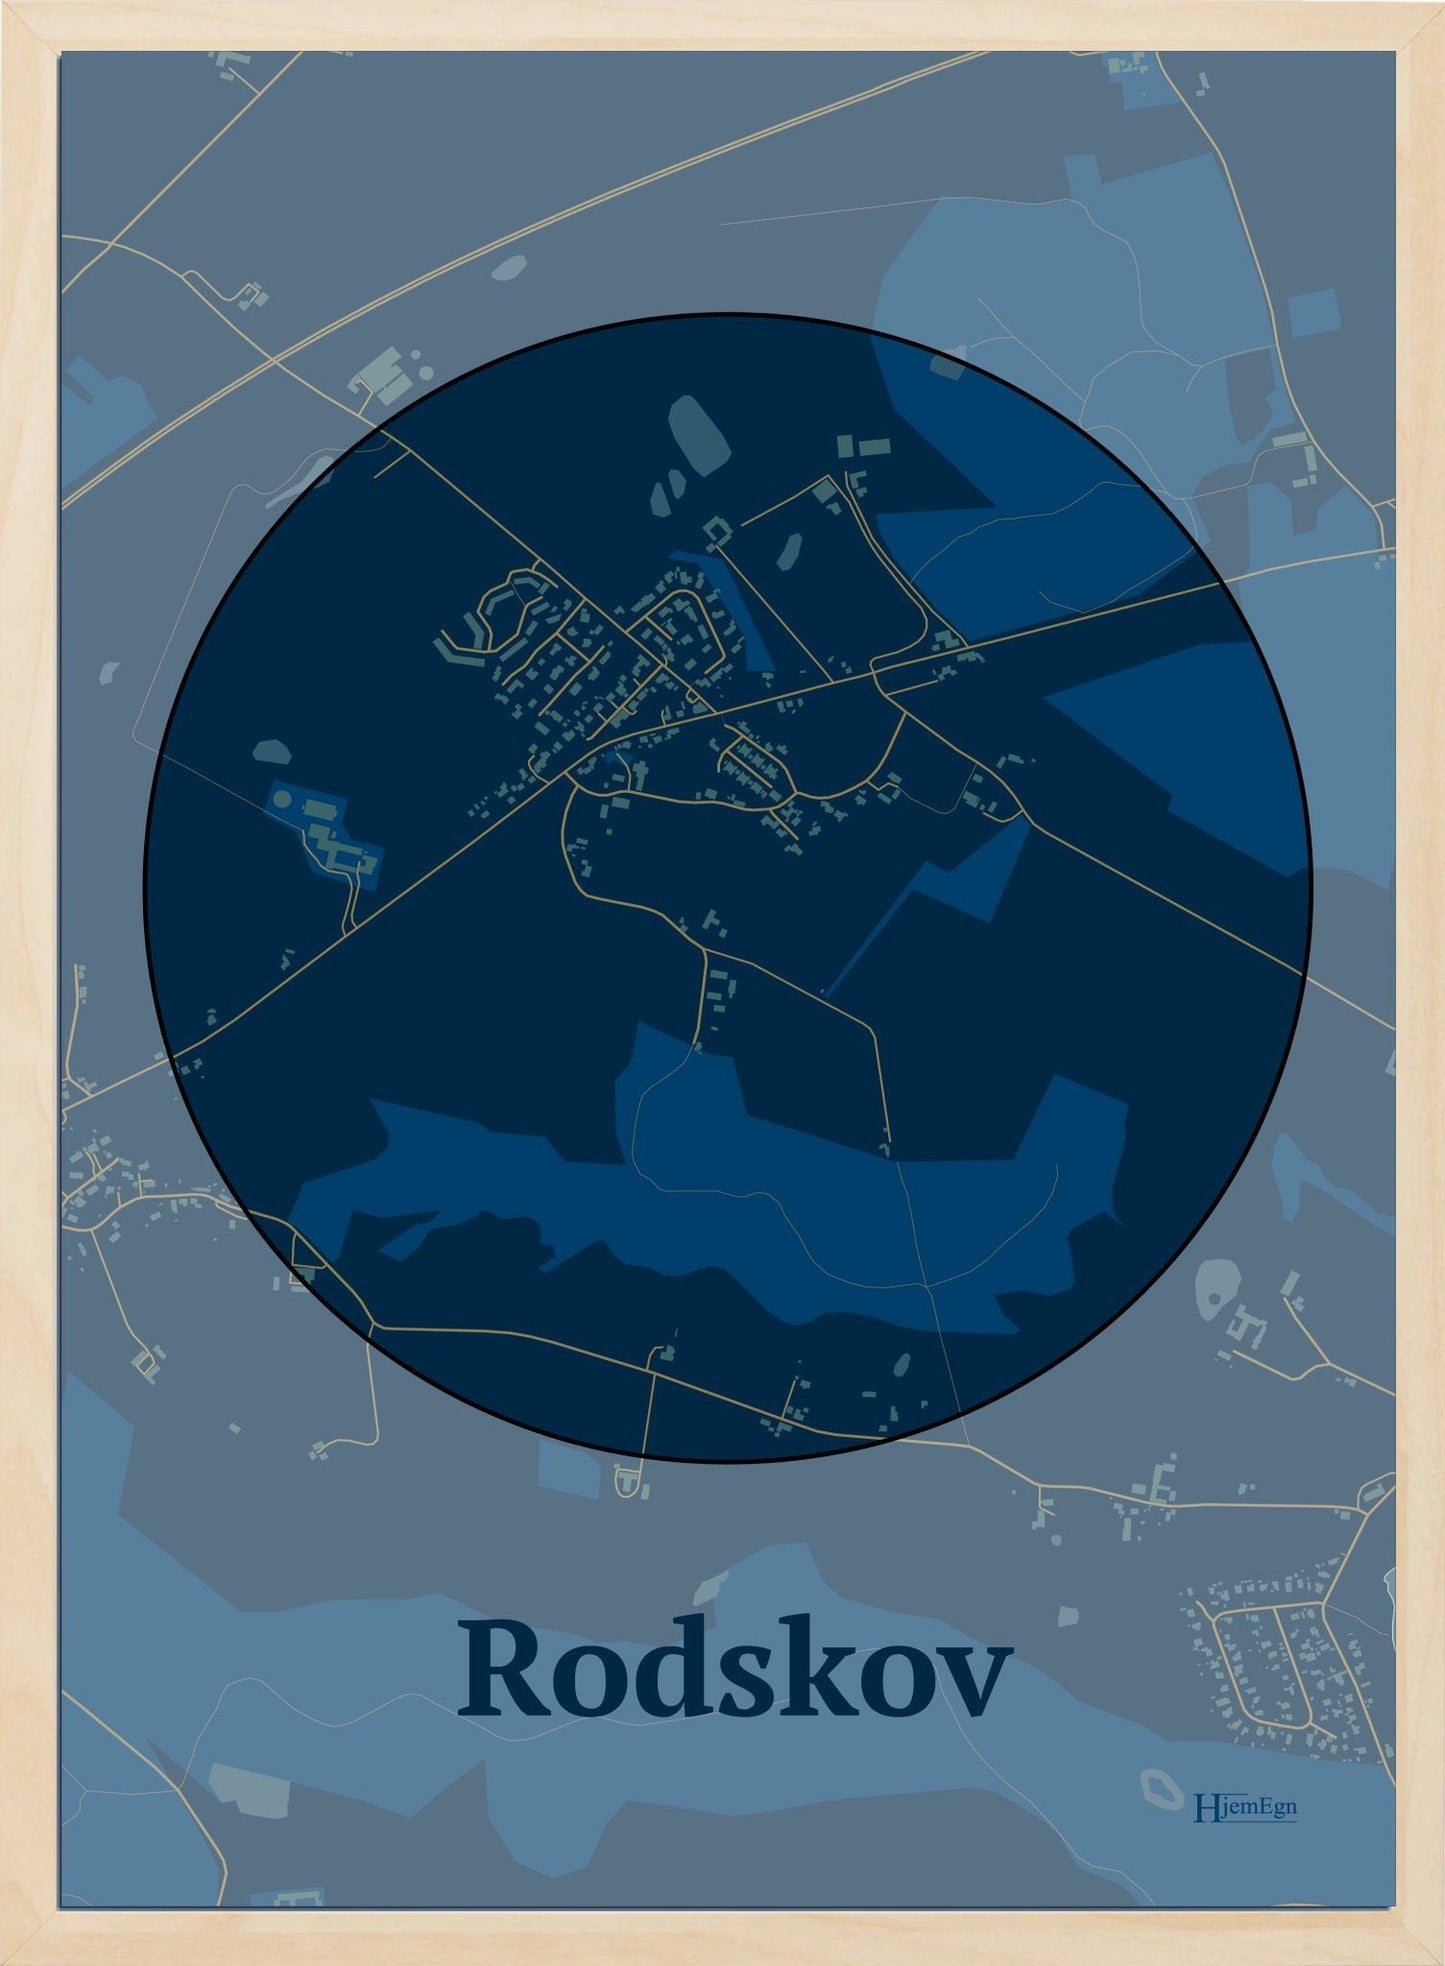 Rodskov plakat i farve mørk blå og HjemEgn.dk design centrum. Design bykort for Rodskov